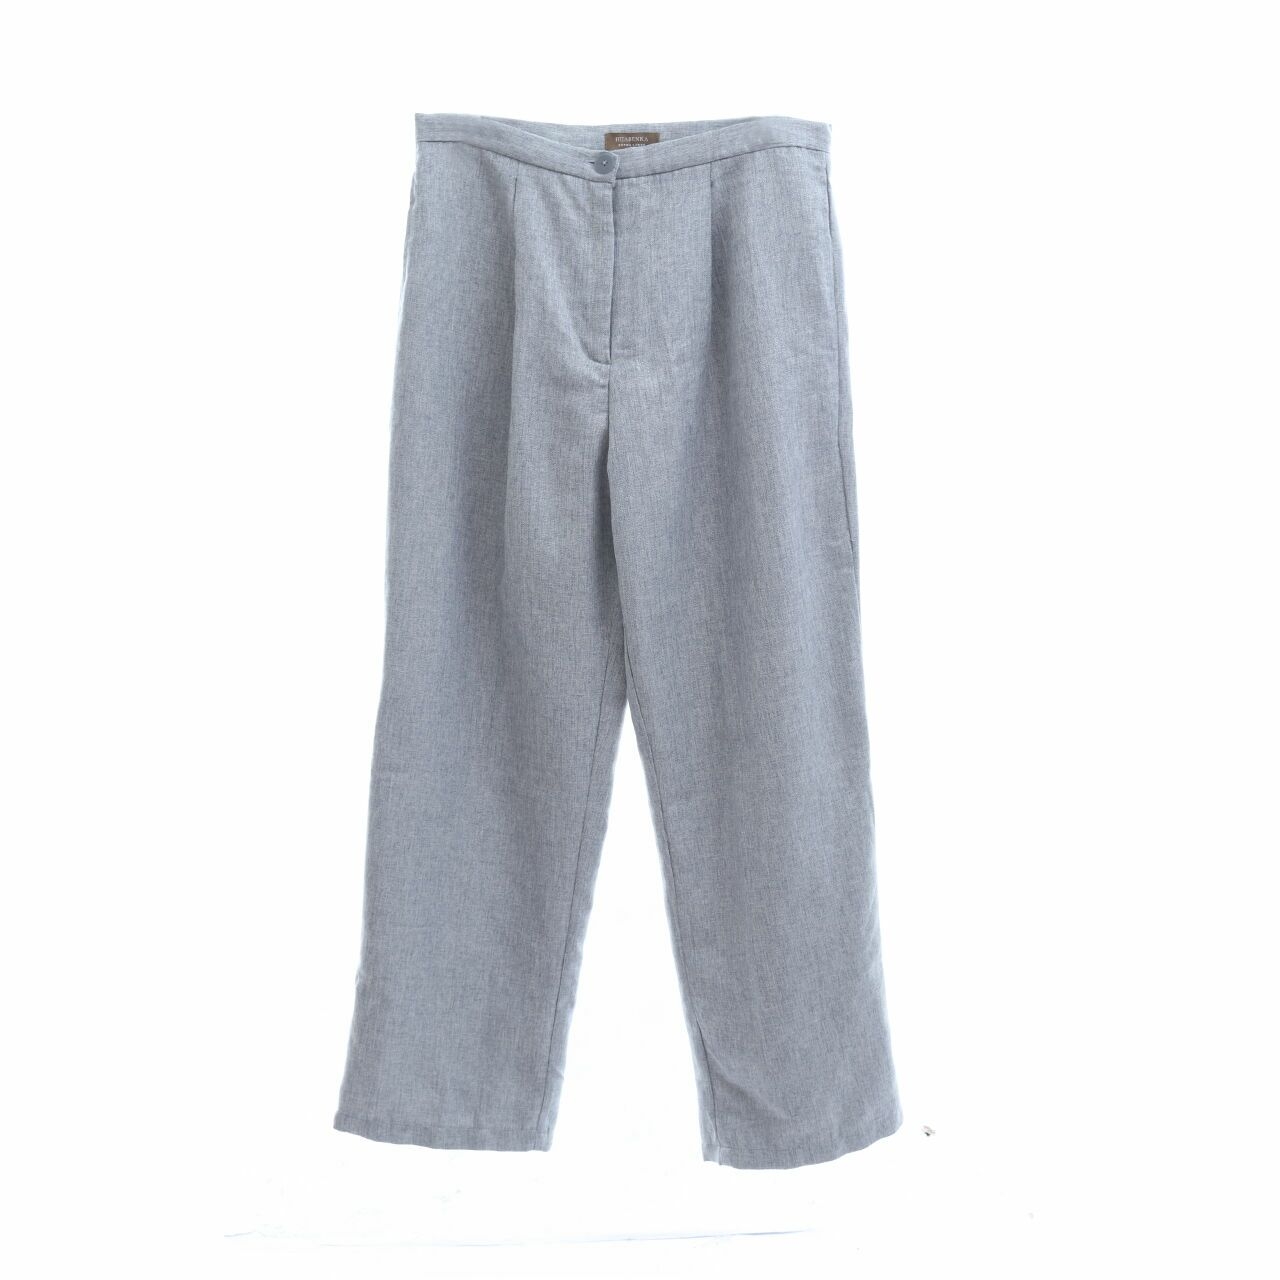 Hijabenka Grey Long Pants